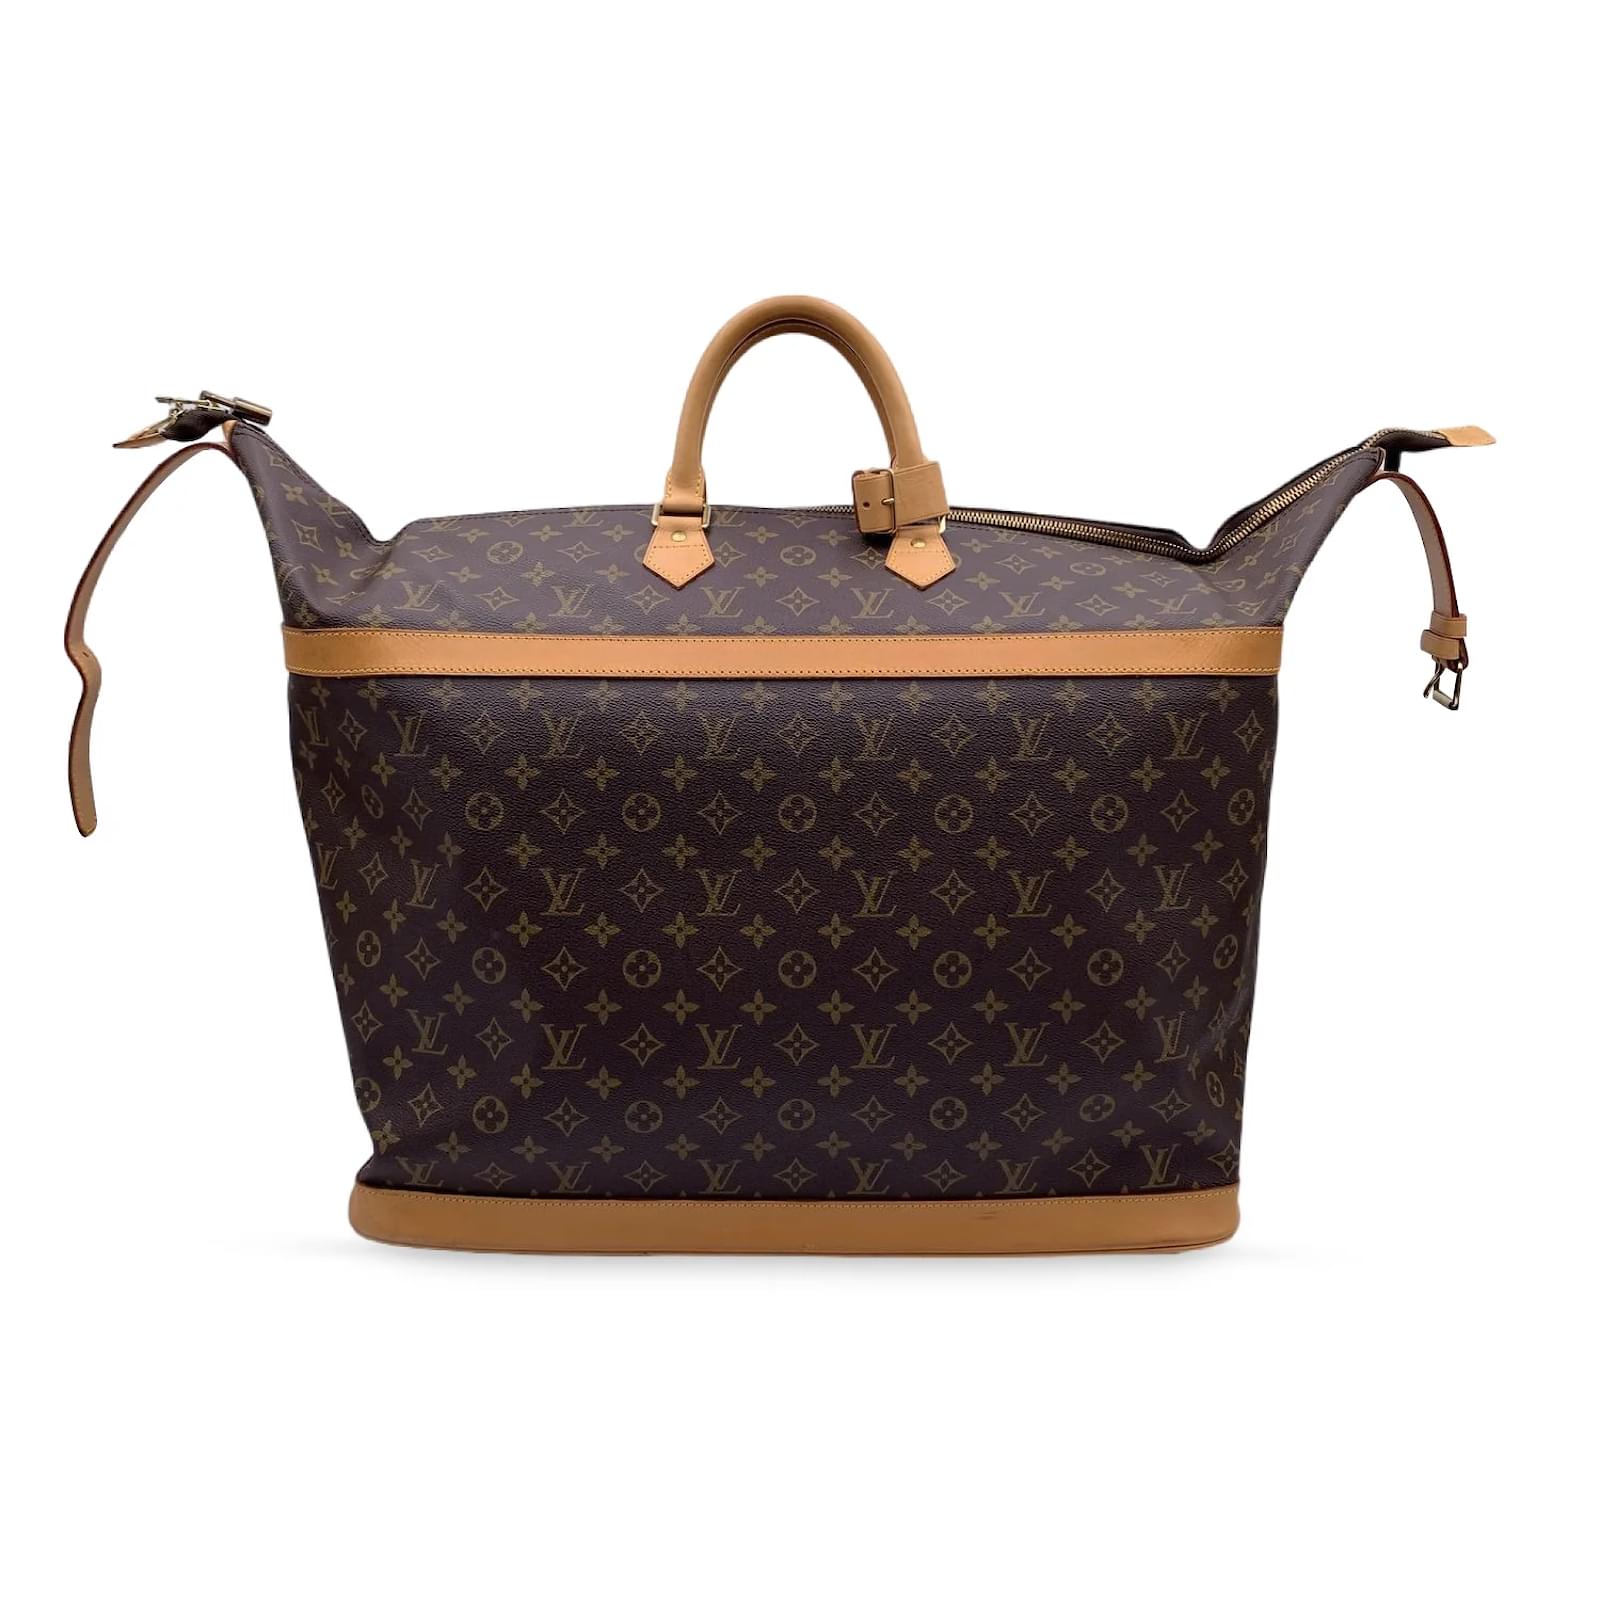 Authentic Louis Vuitton Monogram Cruiser 50 Trunk Travel Bag